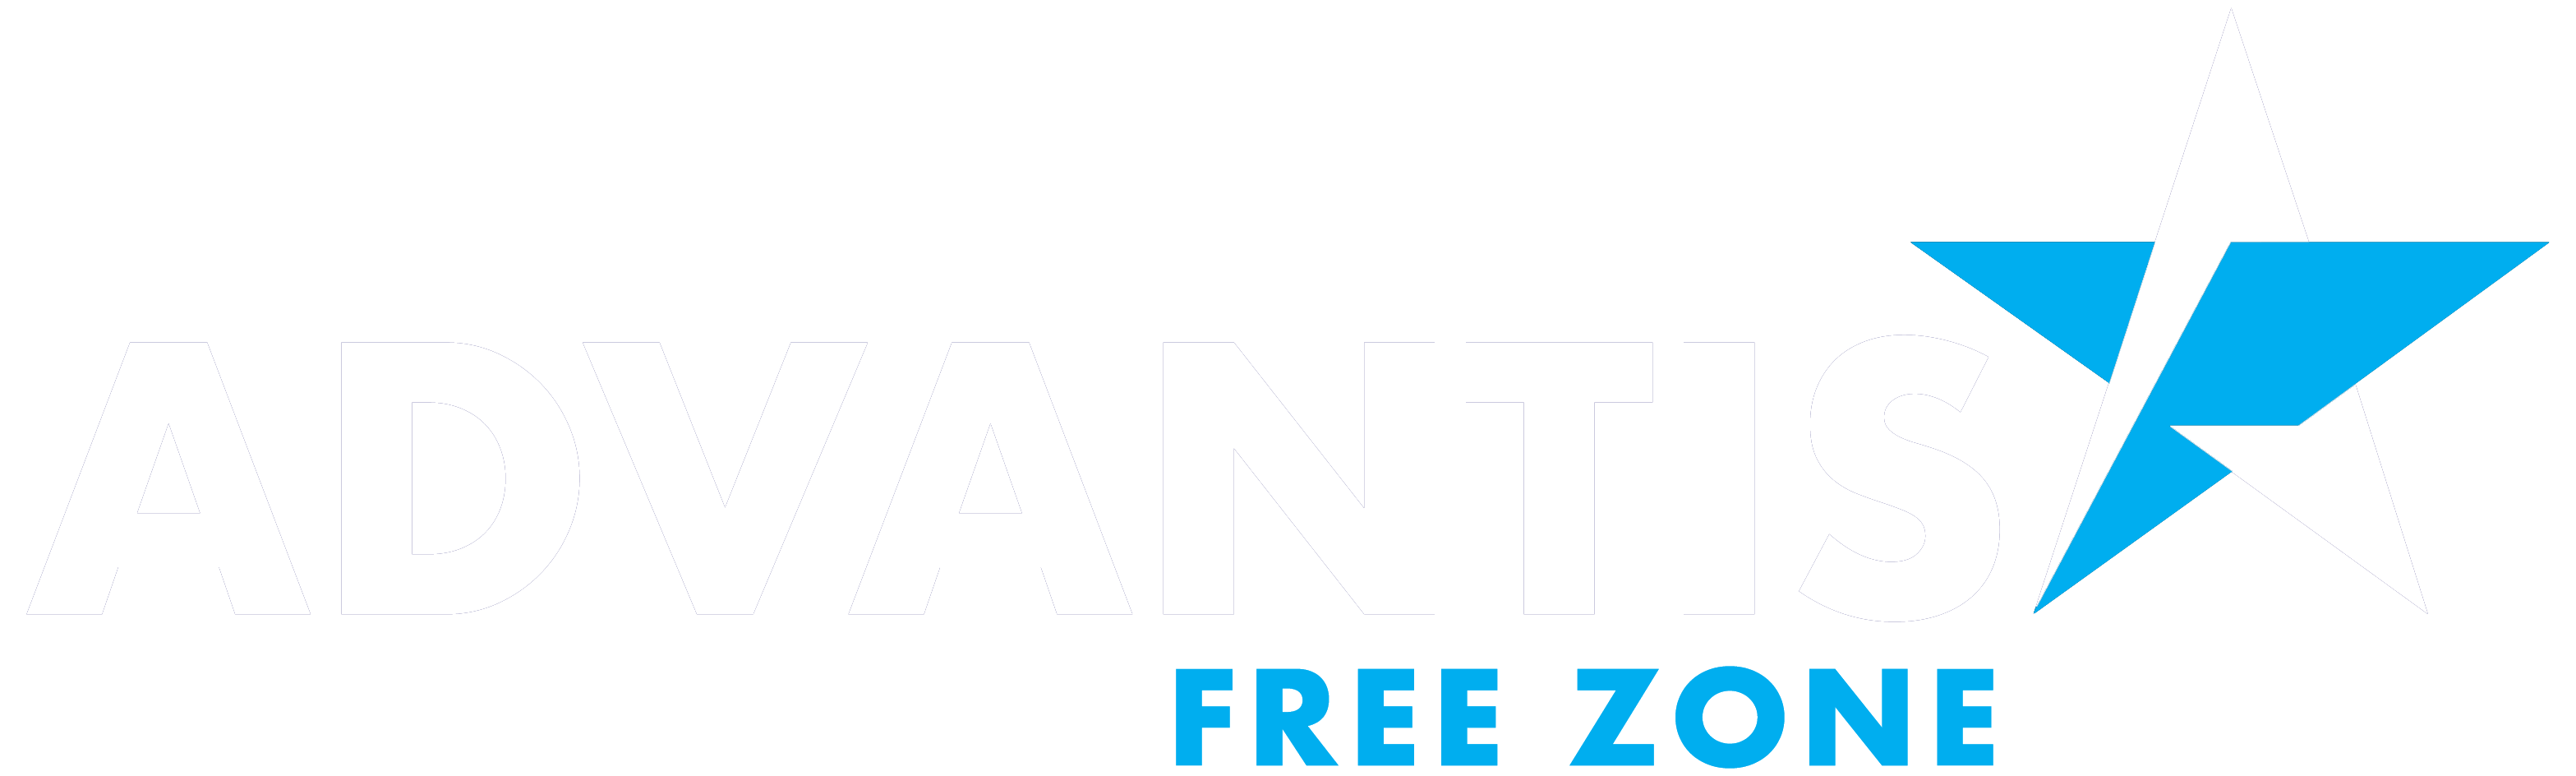 Advantis Free Zone